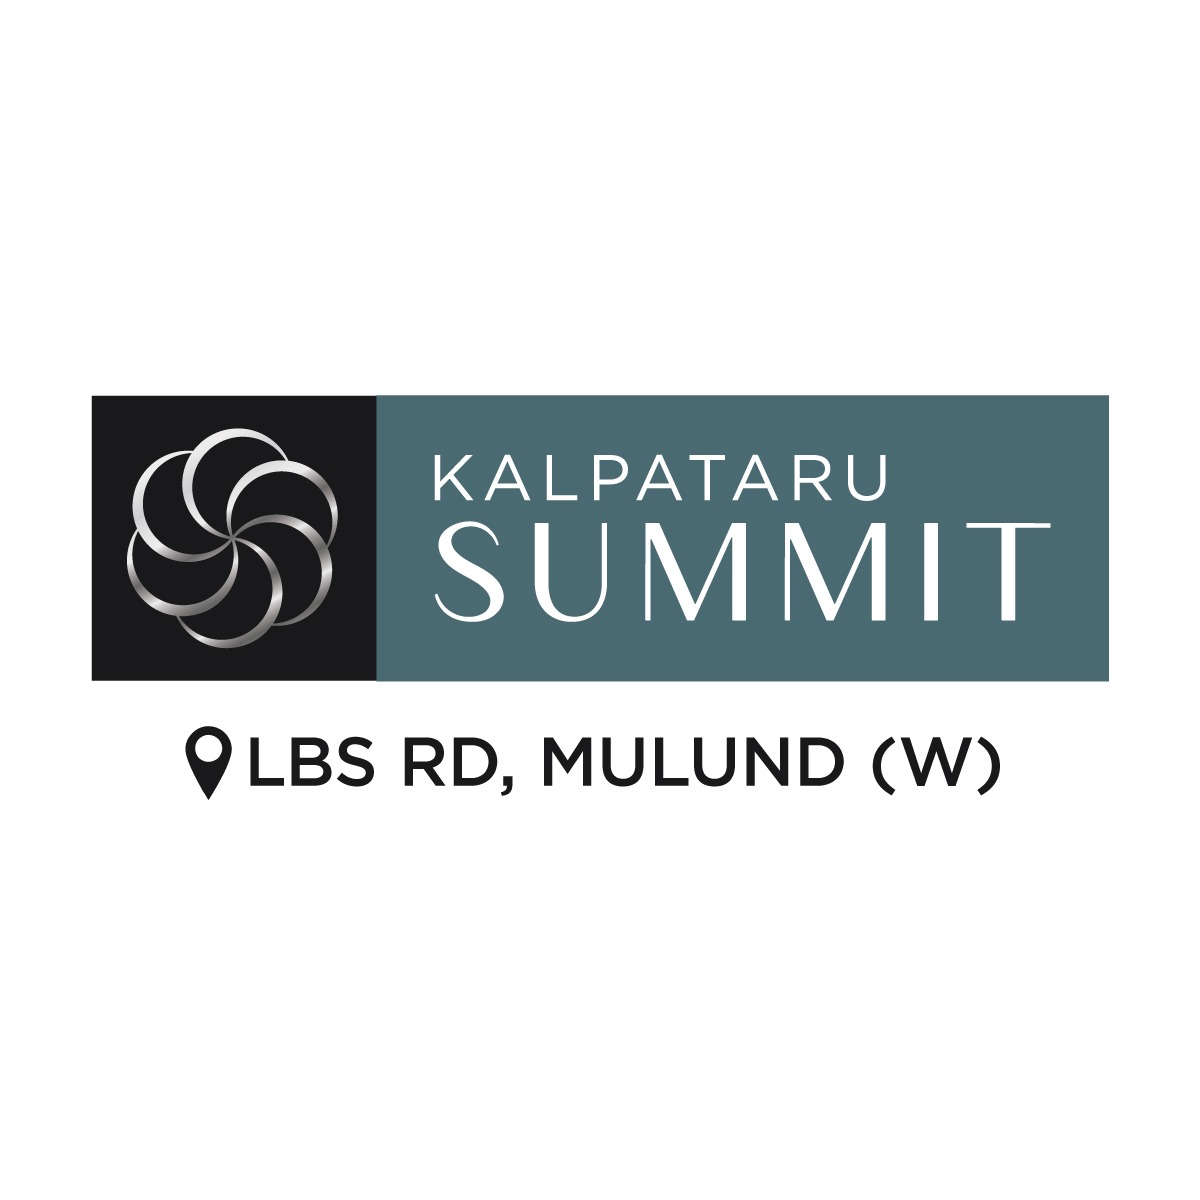 Kalpataru Summit